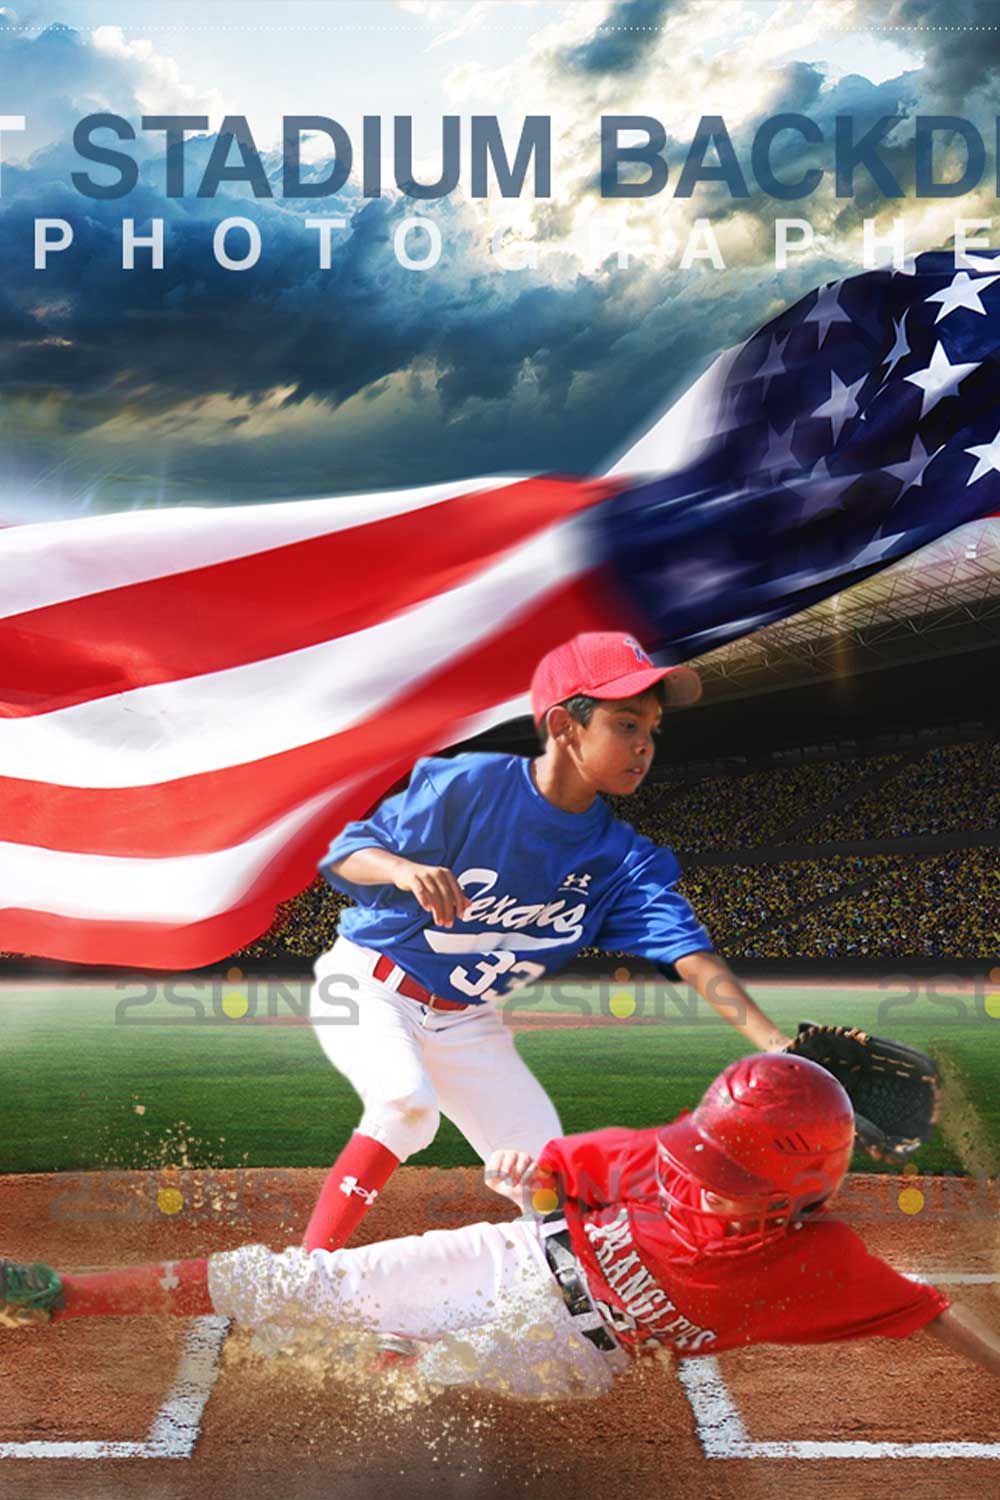 USA Flag Baseball Backdrop Sports Digital Backdrop Pinterest Image.